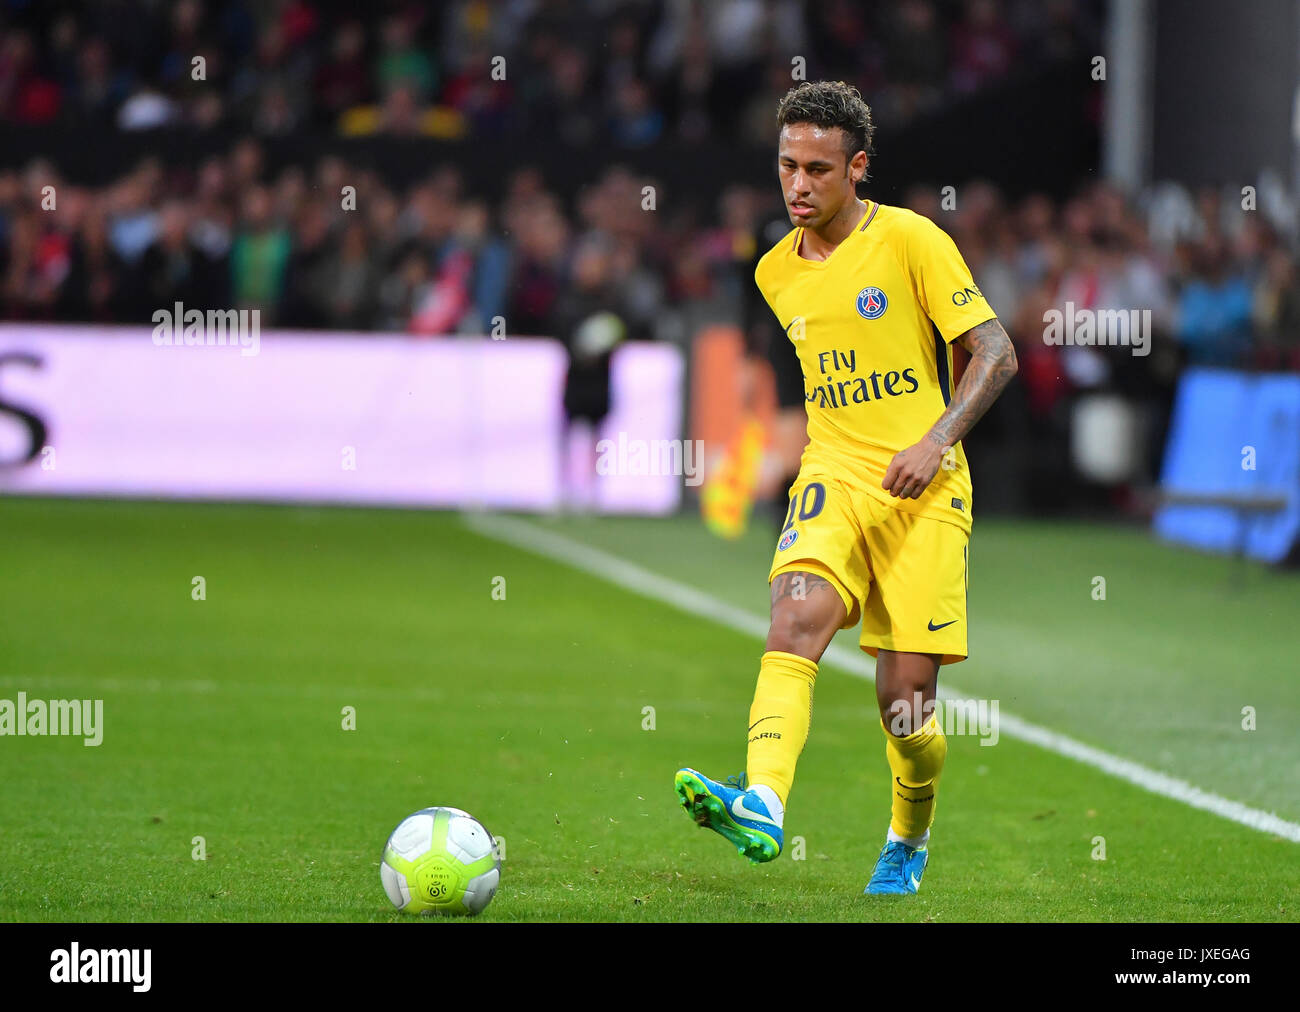 Paris Saint-Germain l'avant du Brésil de Neymar exécute au cours de l'anglais L1 match de football Paris Saint-Germain (PSG) contre l'En Avant Guingamp (EAG) au stade du Roudourou à Guingamp le 13 août 2017. Banque D'Images